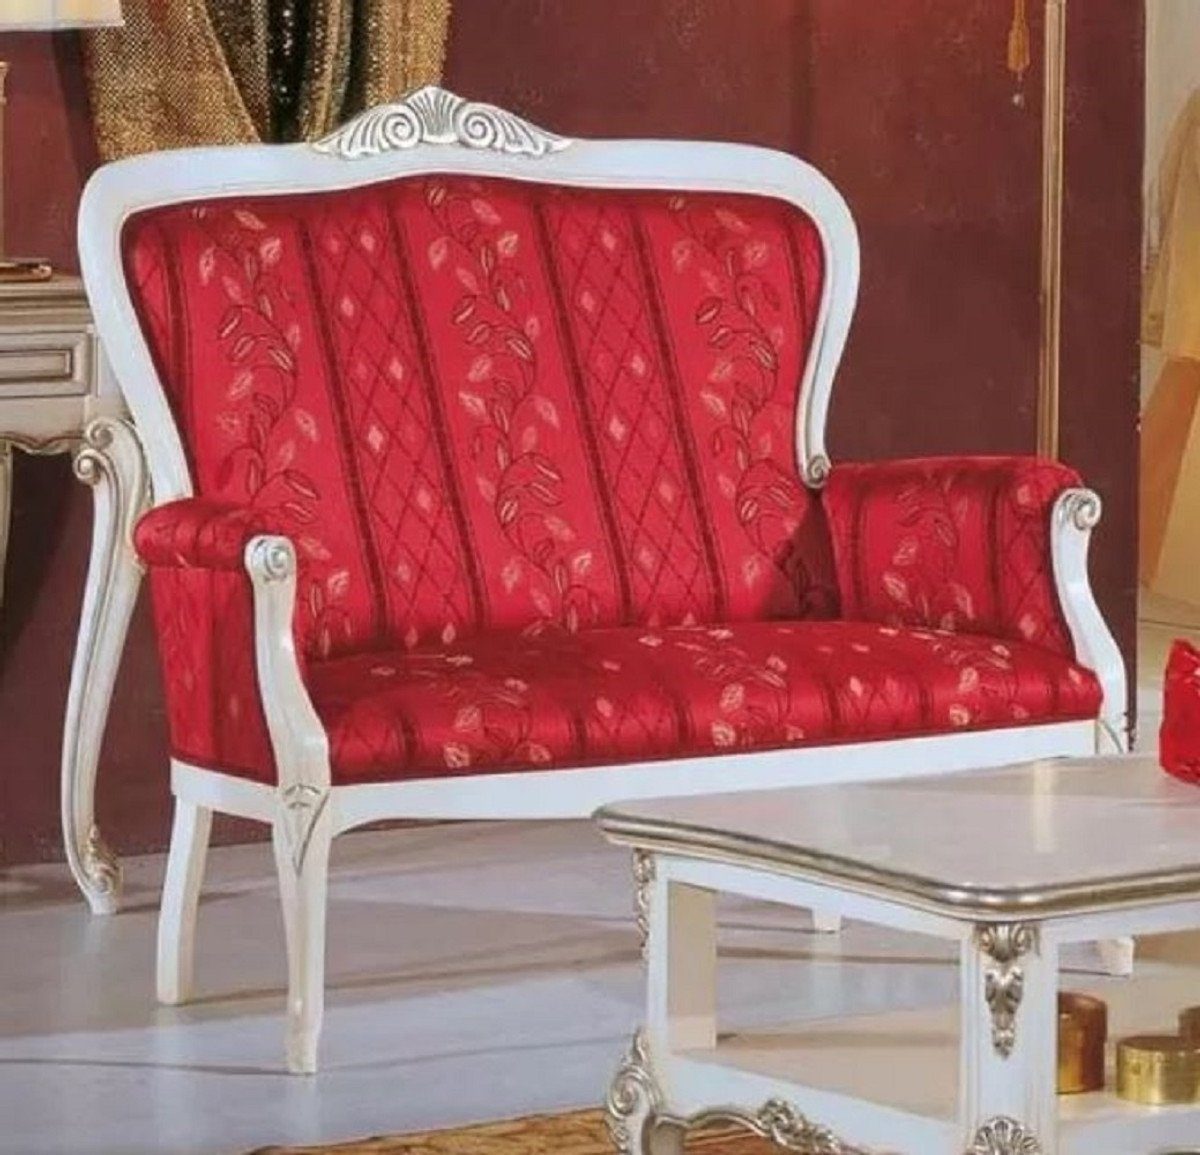 Casa Padrino Sofa Luxus Barock Sofa Rot / Weiß / Silber - Edles Wohnzimmer Sofa mit elegantem Muster - Barock Möbel - Luxus Qualität - Made in Italy | Alle Sofas